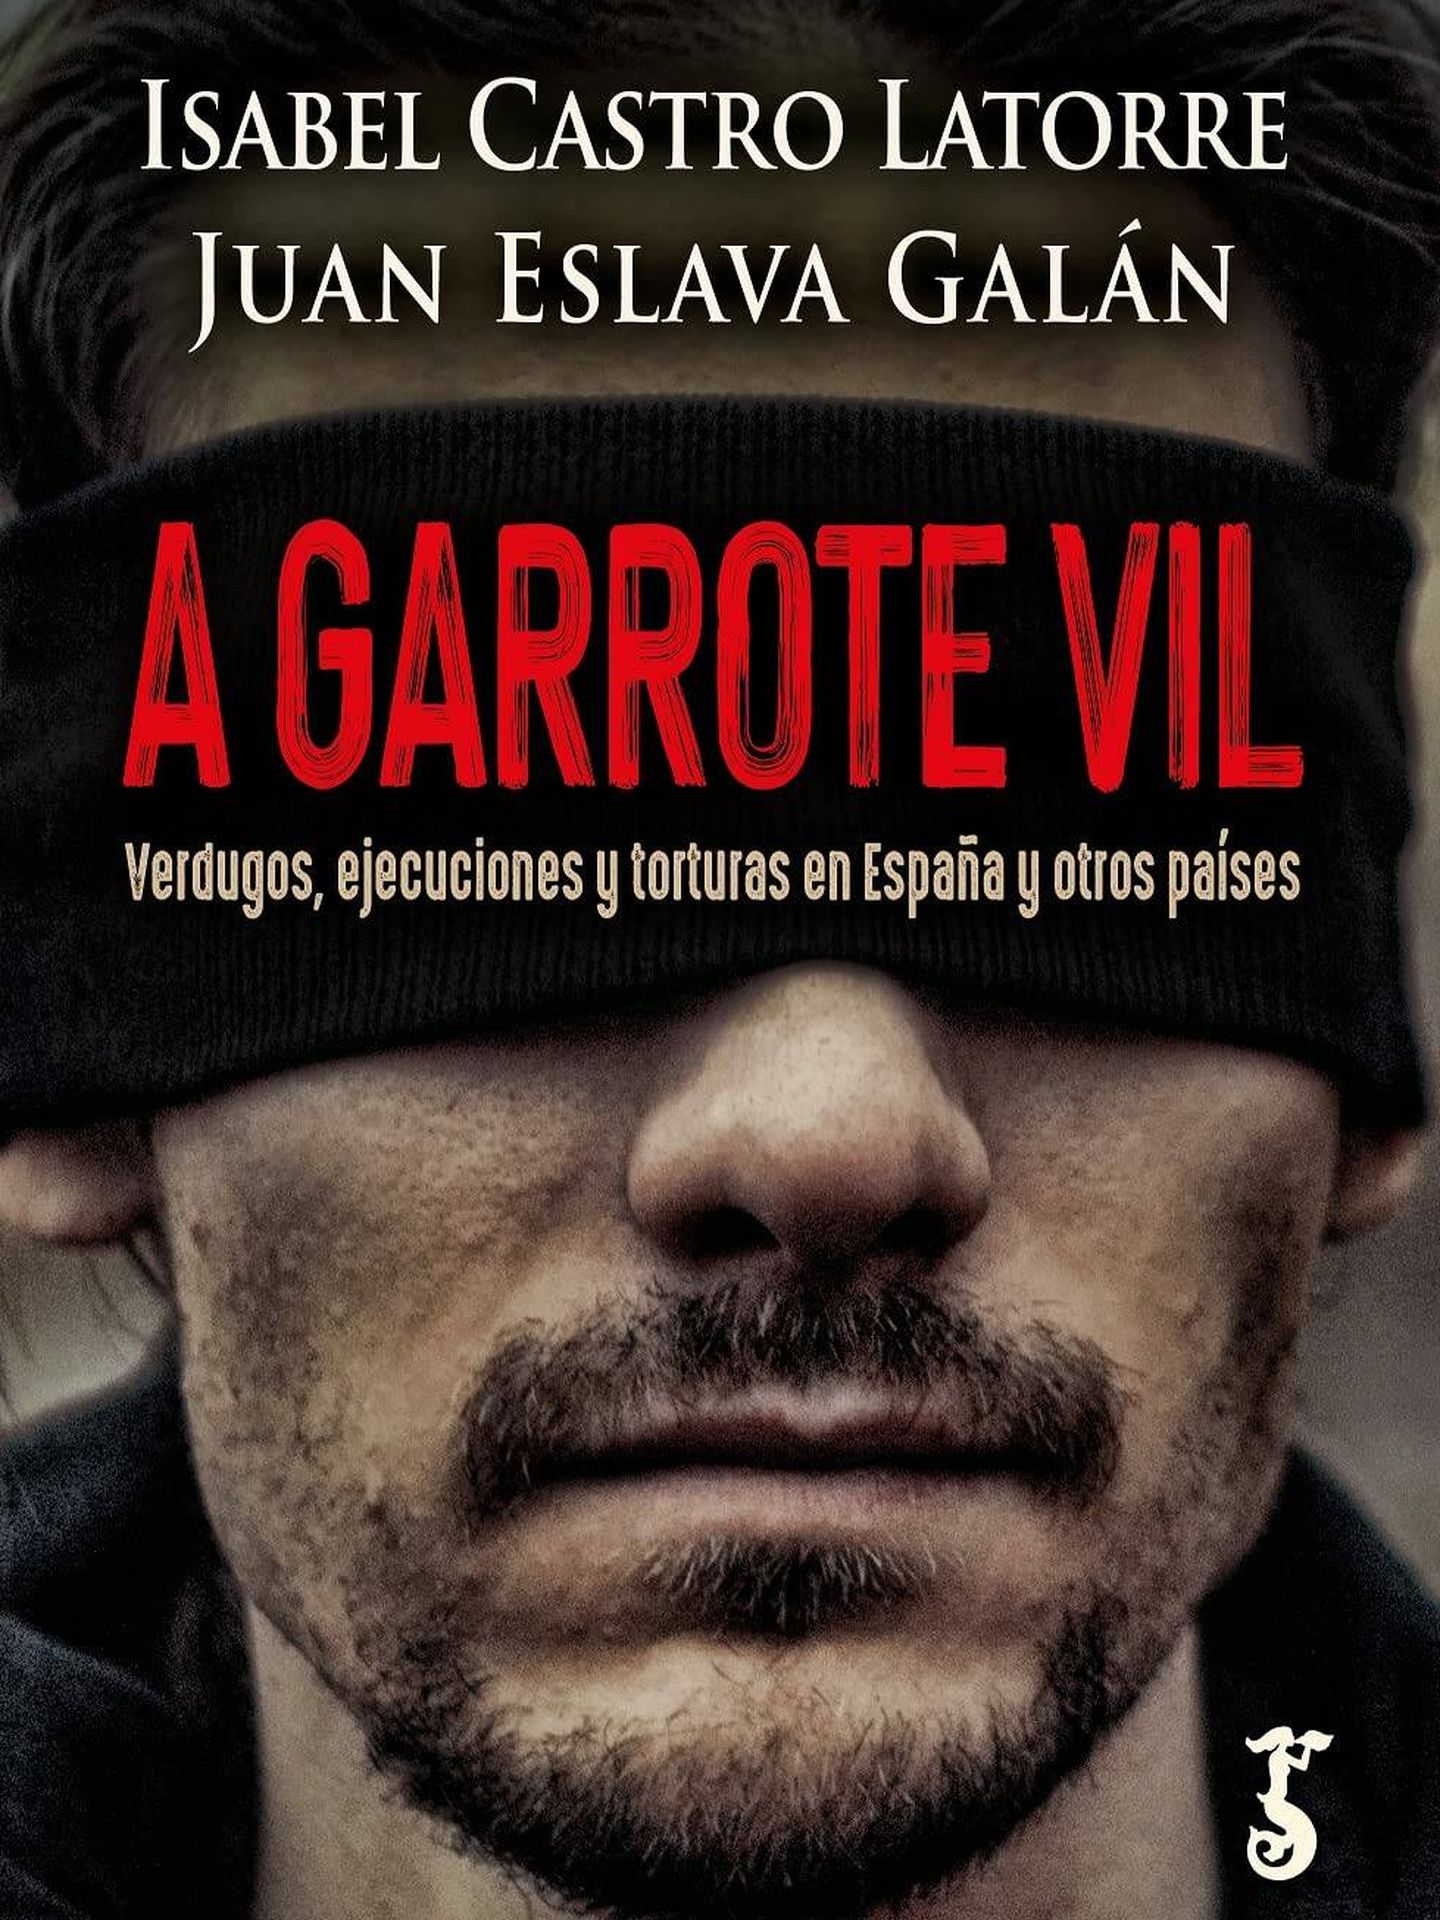 Portada del libro 'A garrote vil', de Isabel Castro Latorre y Juan Eslava Galán.